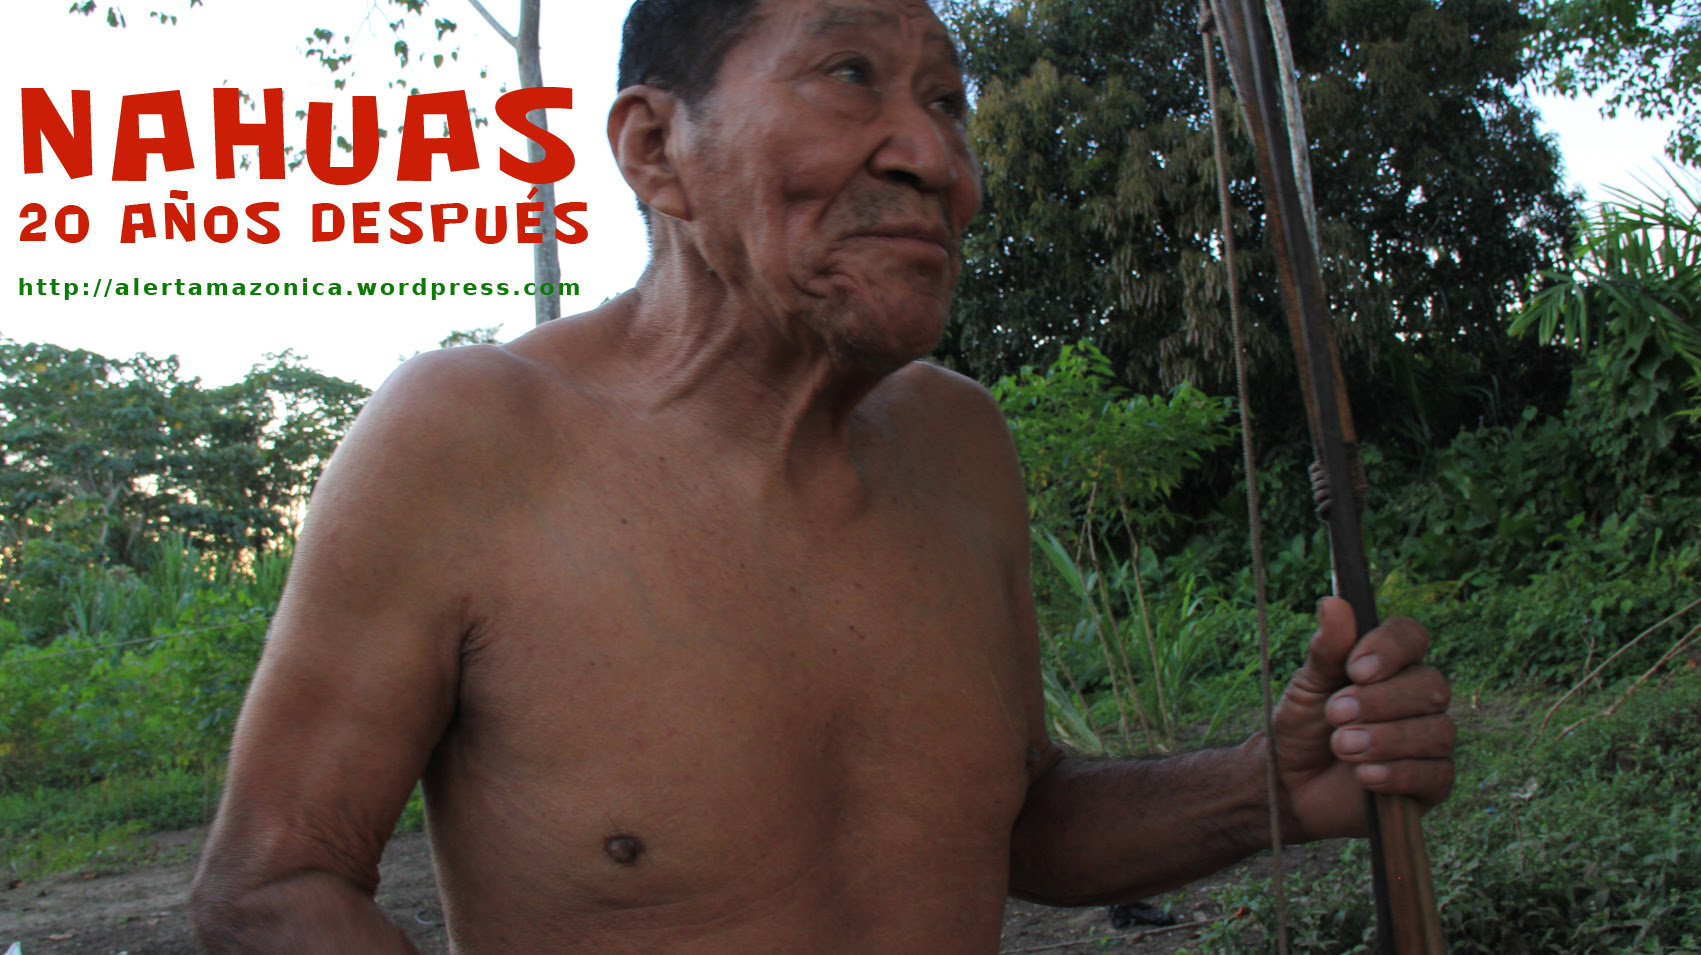 NUEVO DOCUMENTAL: "ASFALTAR BOLIVIA" - El mito del progreso y sus consecuencias Cartell-nahuas